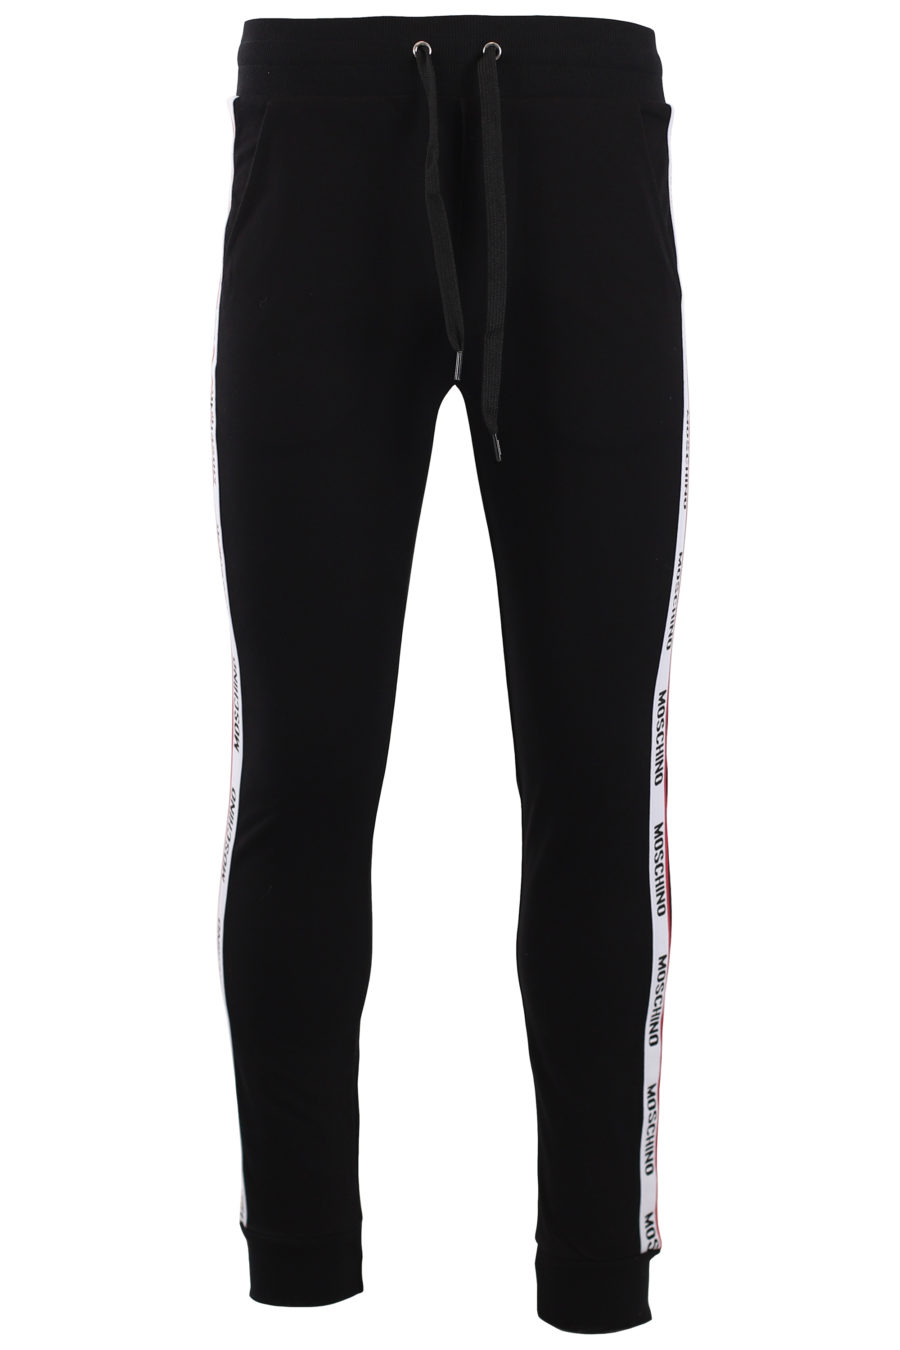 Pantalón chándal negro con logo en cinta laterales - IMG 9577